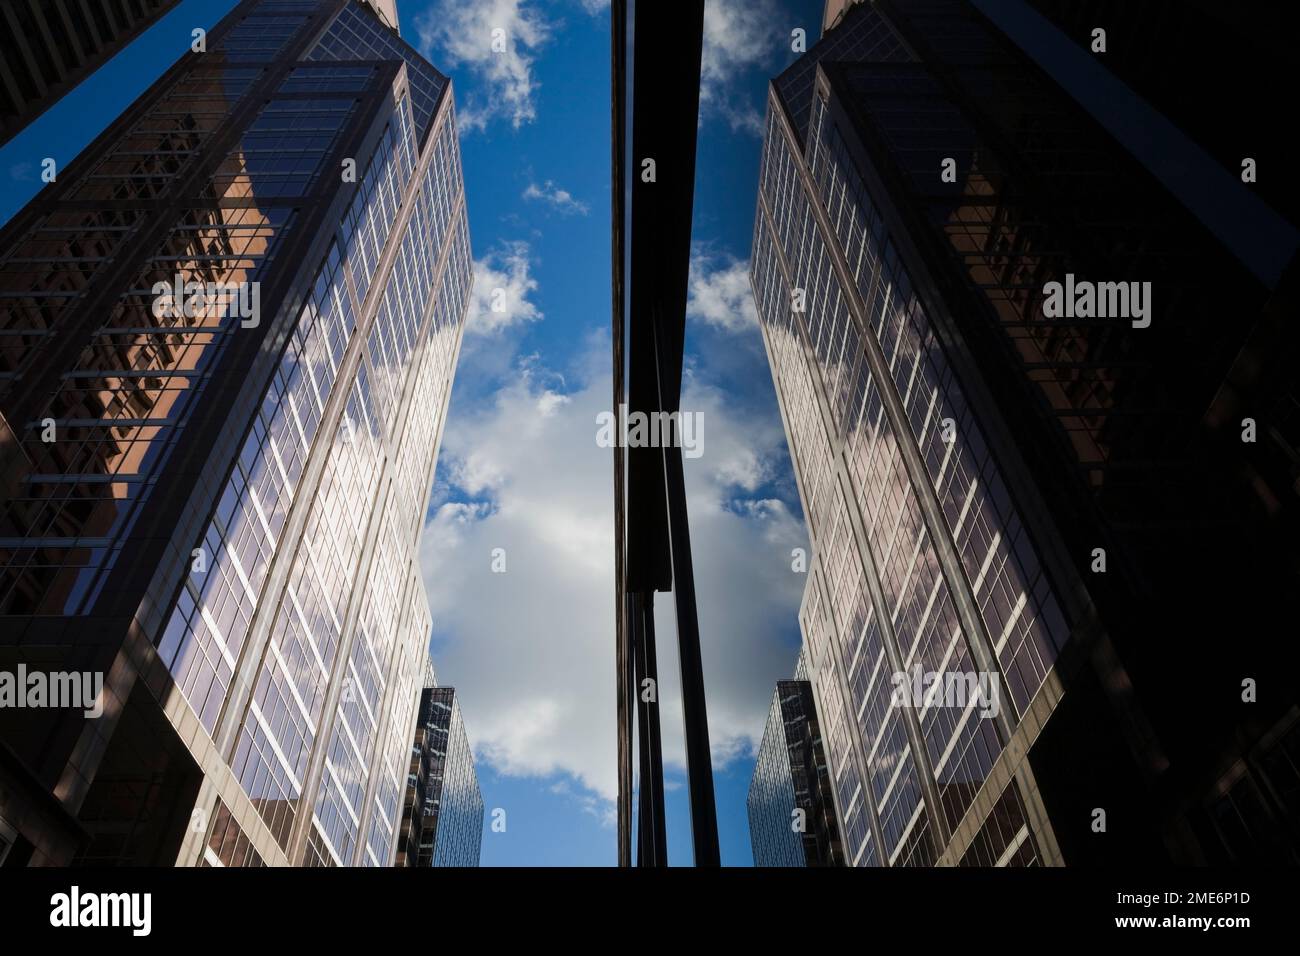 Spiegelbild von Gebäuden mit blauem Himmel und Wolken, die in großen Glasscheiben reflektiert werden, Montreal, Quebec, Kanada. Stockfoto